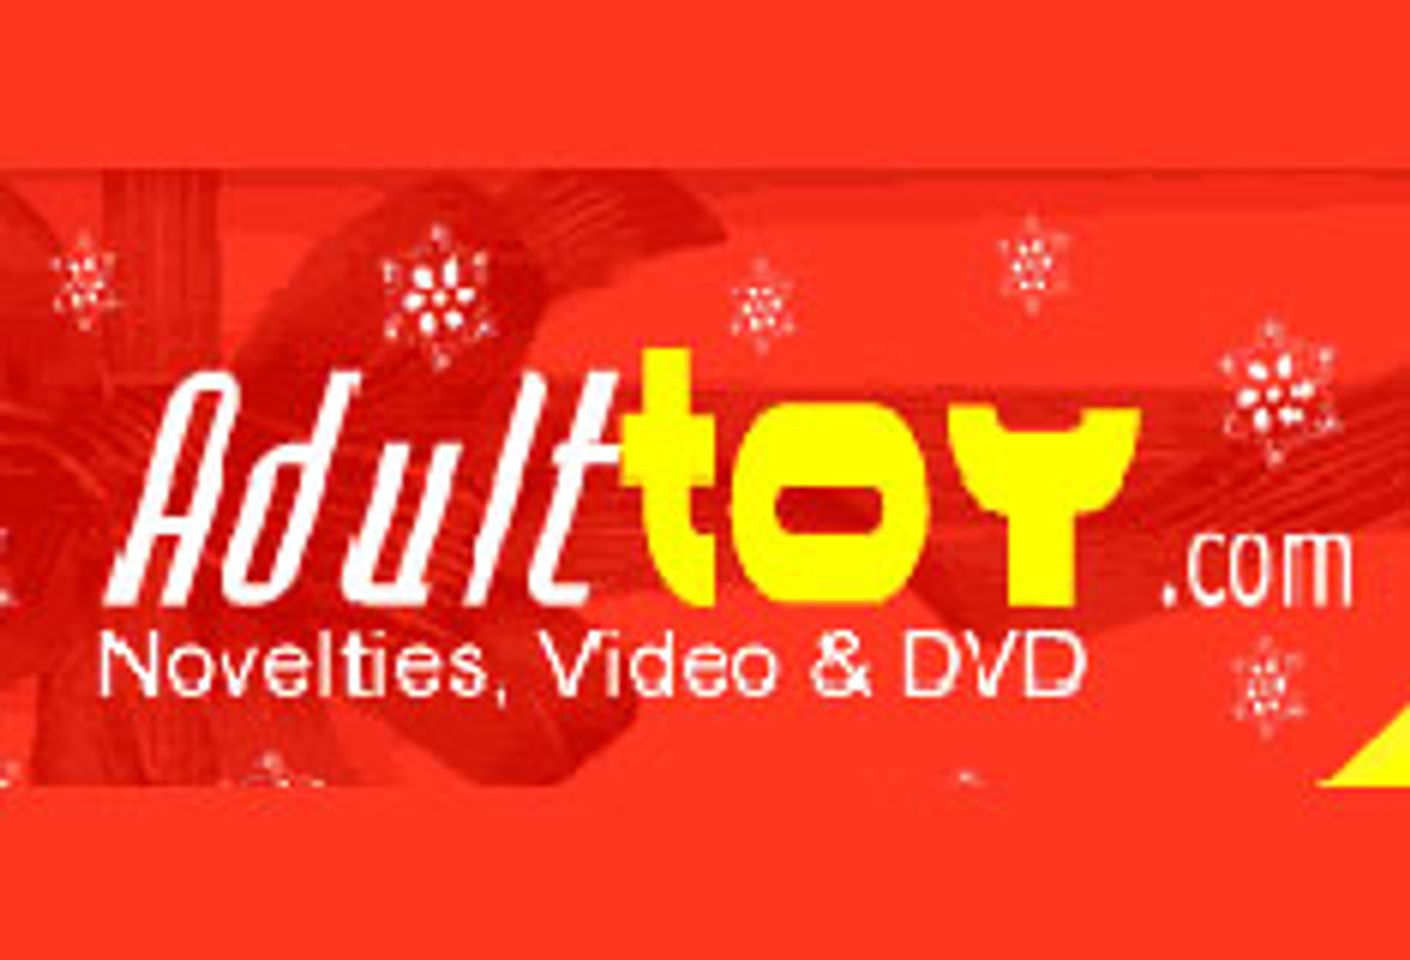 AdultToy.com Gets A Makeover